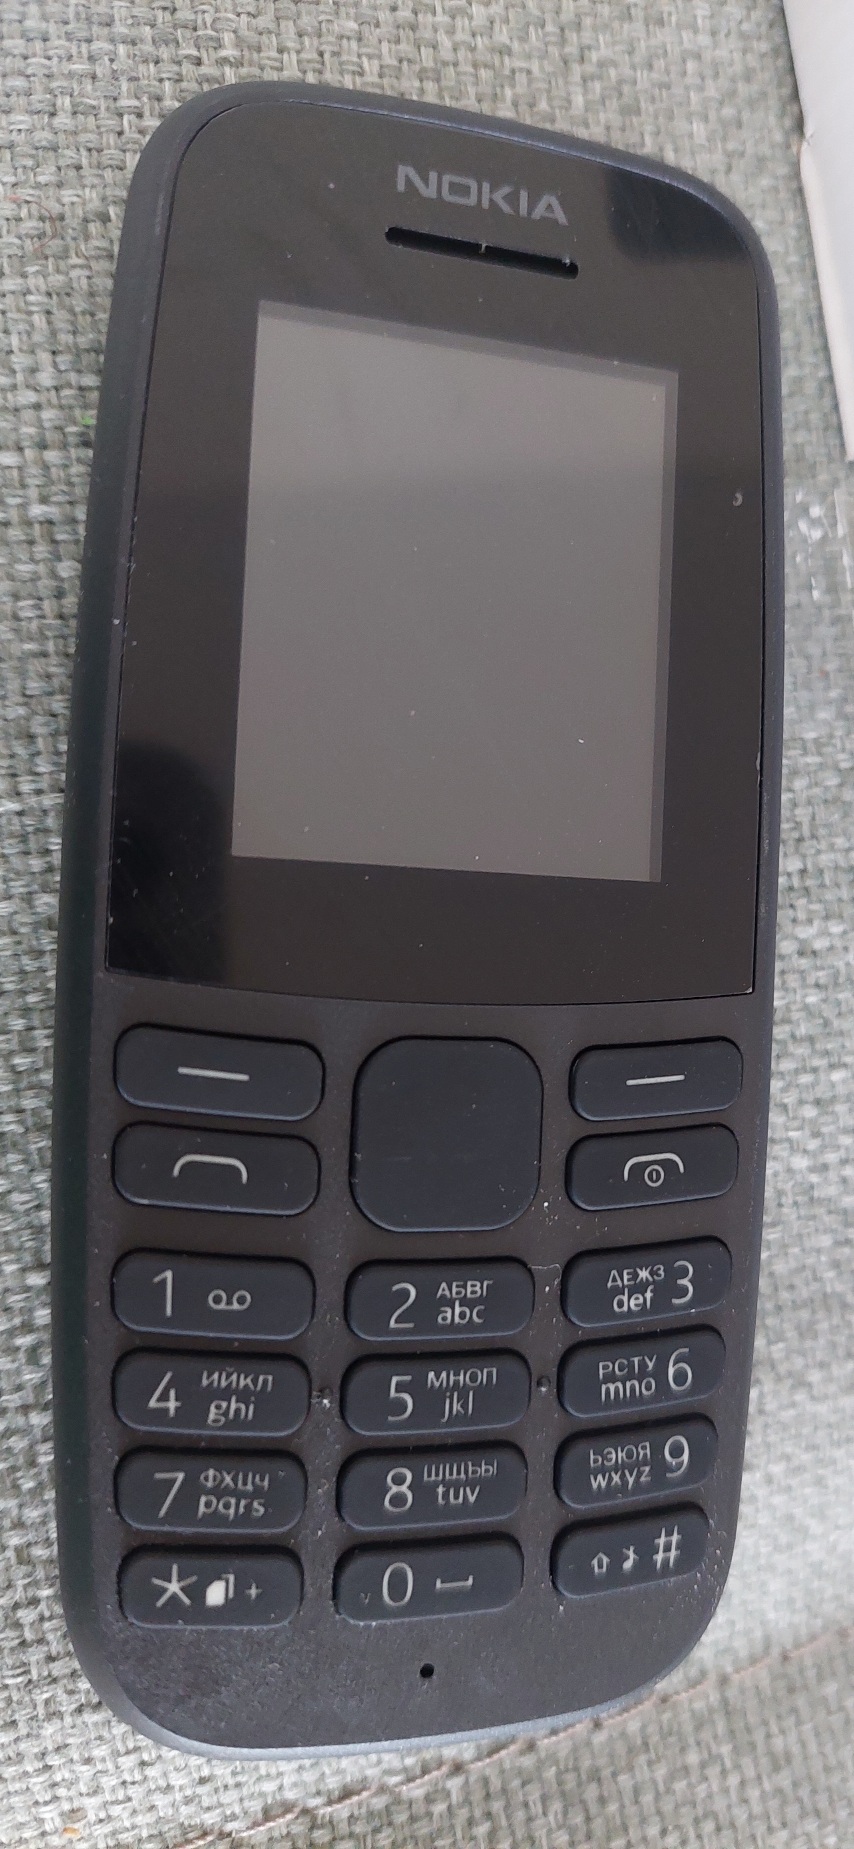 Мобильный телефон Nokia 105 (TA-1174) Black - отзывы покупателей на  маркетплейсе Мегамаркет | Артикул: 100025370246